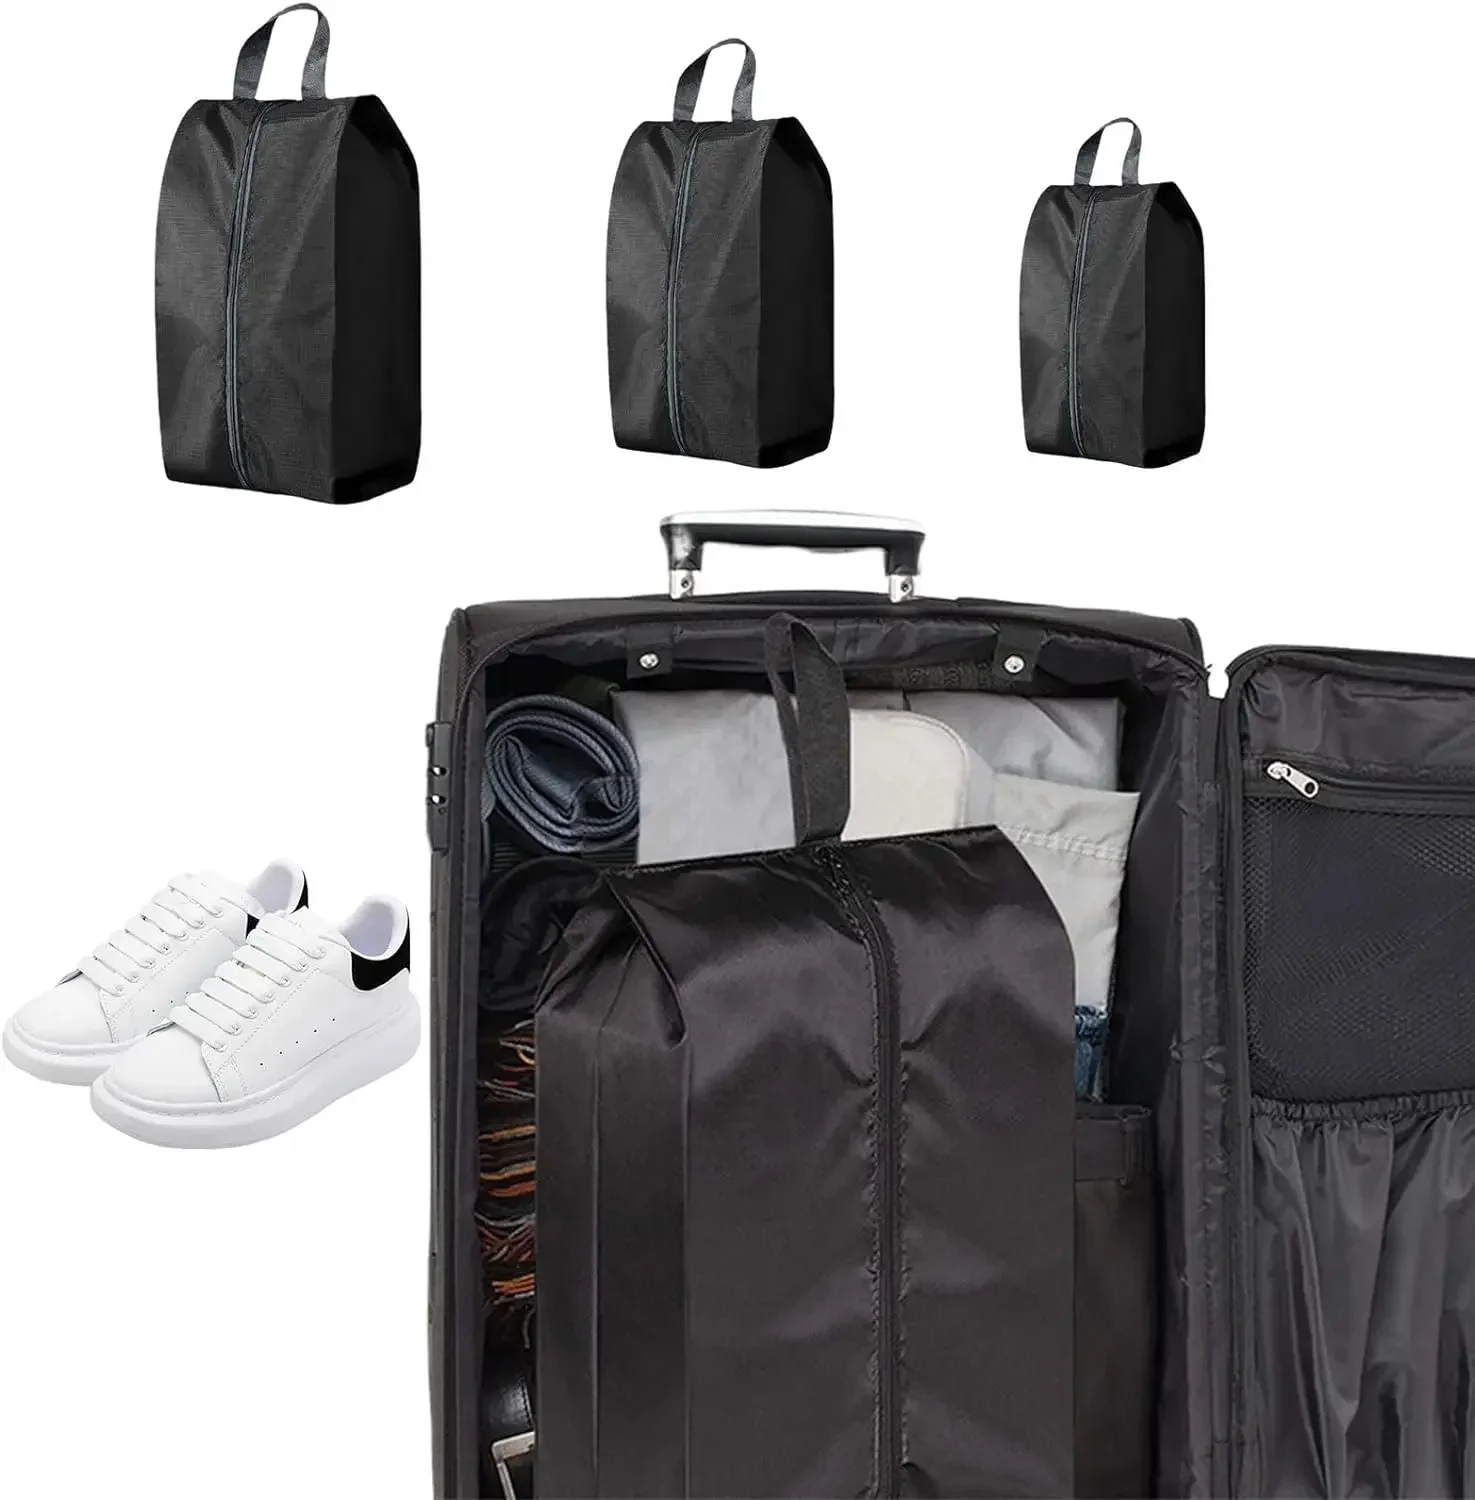 QXB01 przenośny wodoodporny worek na buty wielofunkcyjny składany zewnętrzny torba do przechowywania do domu podróżny buty sportowe męskie/damskie